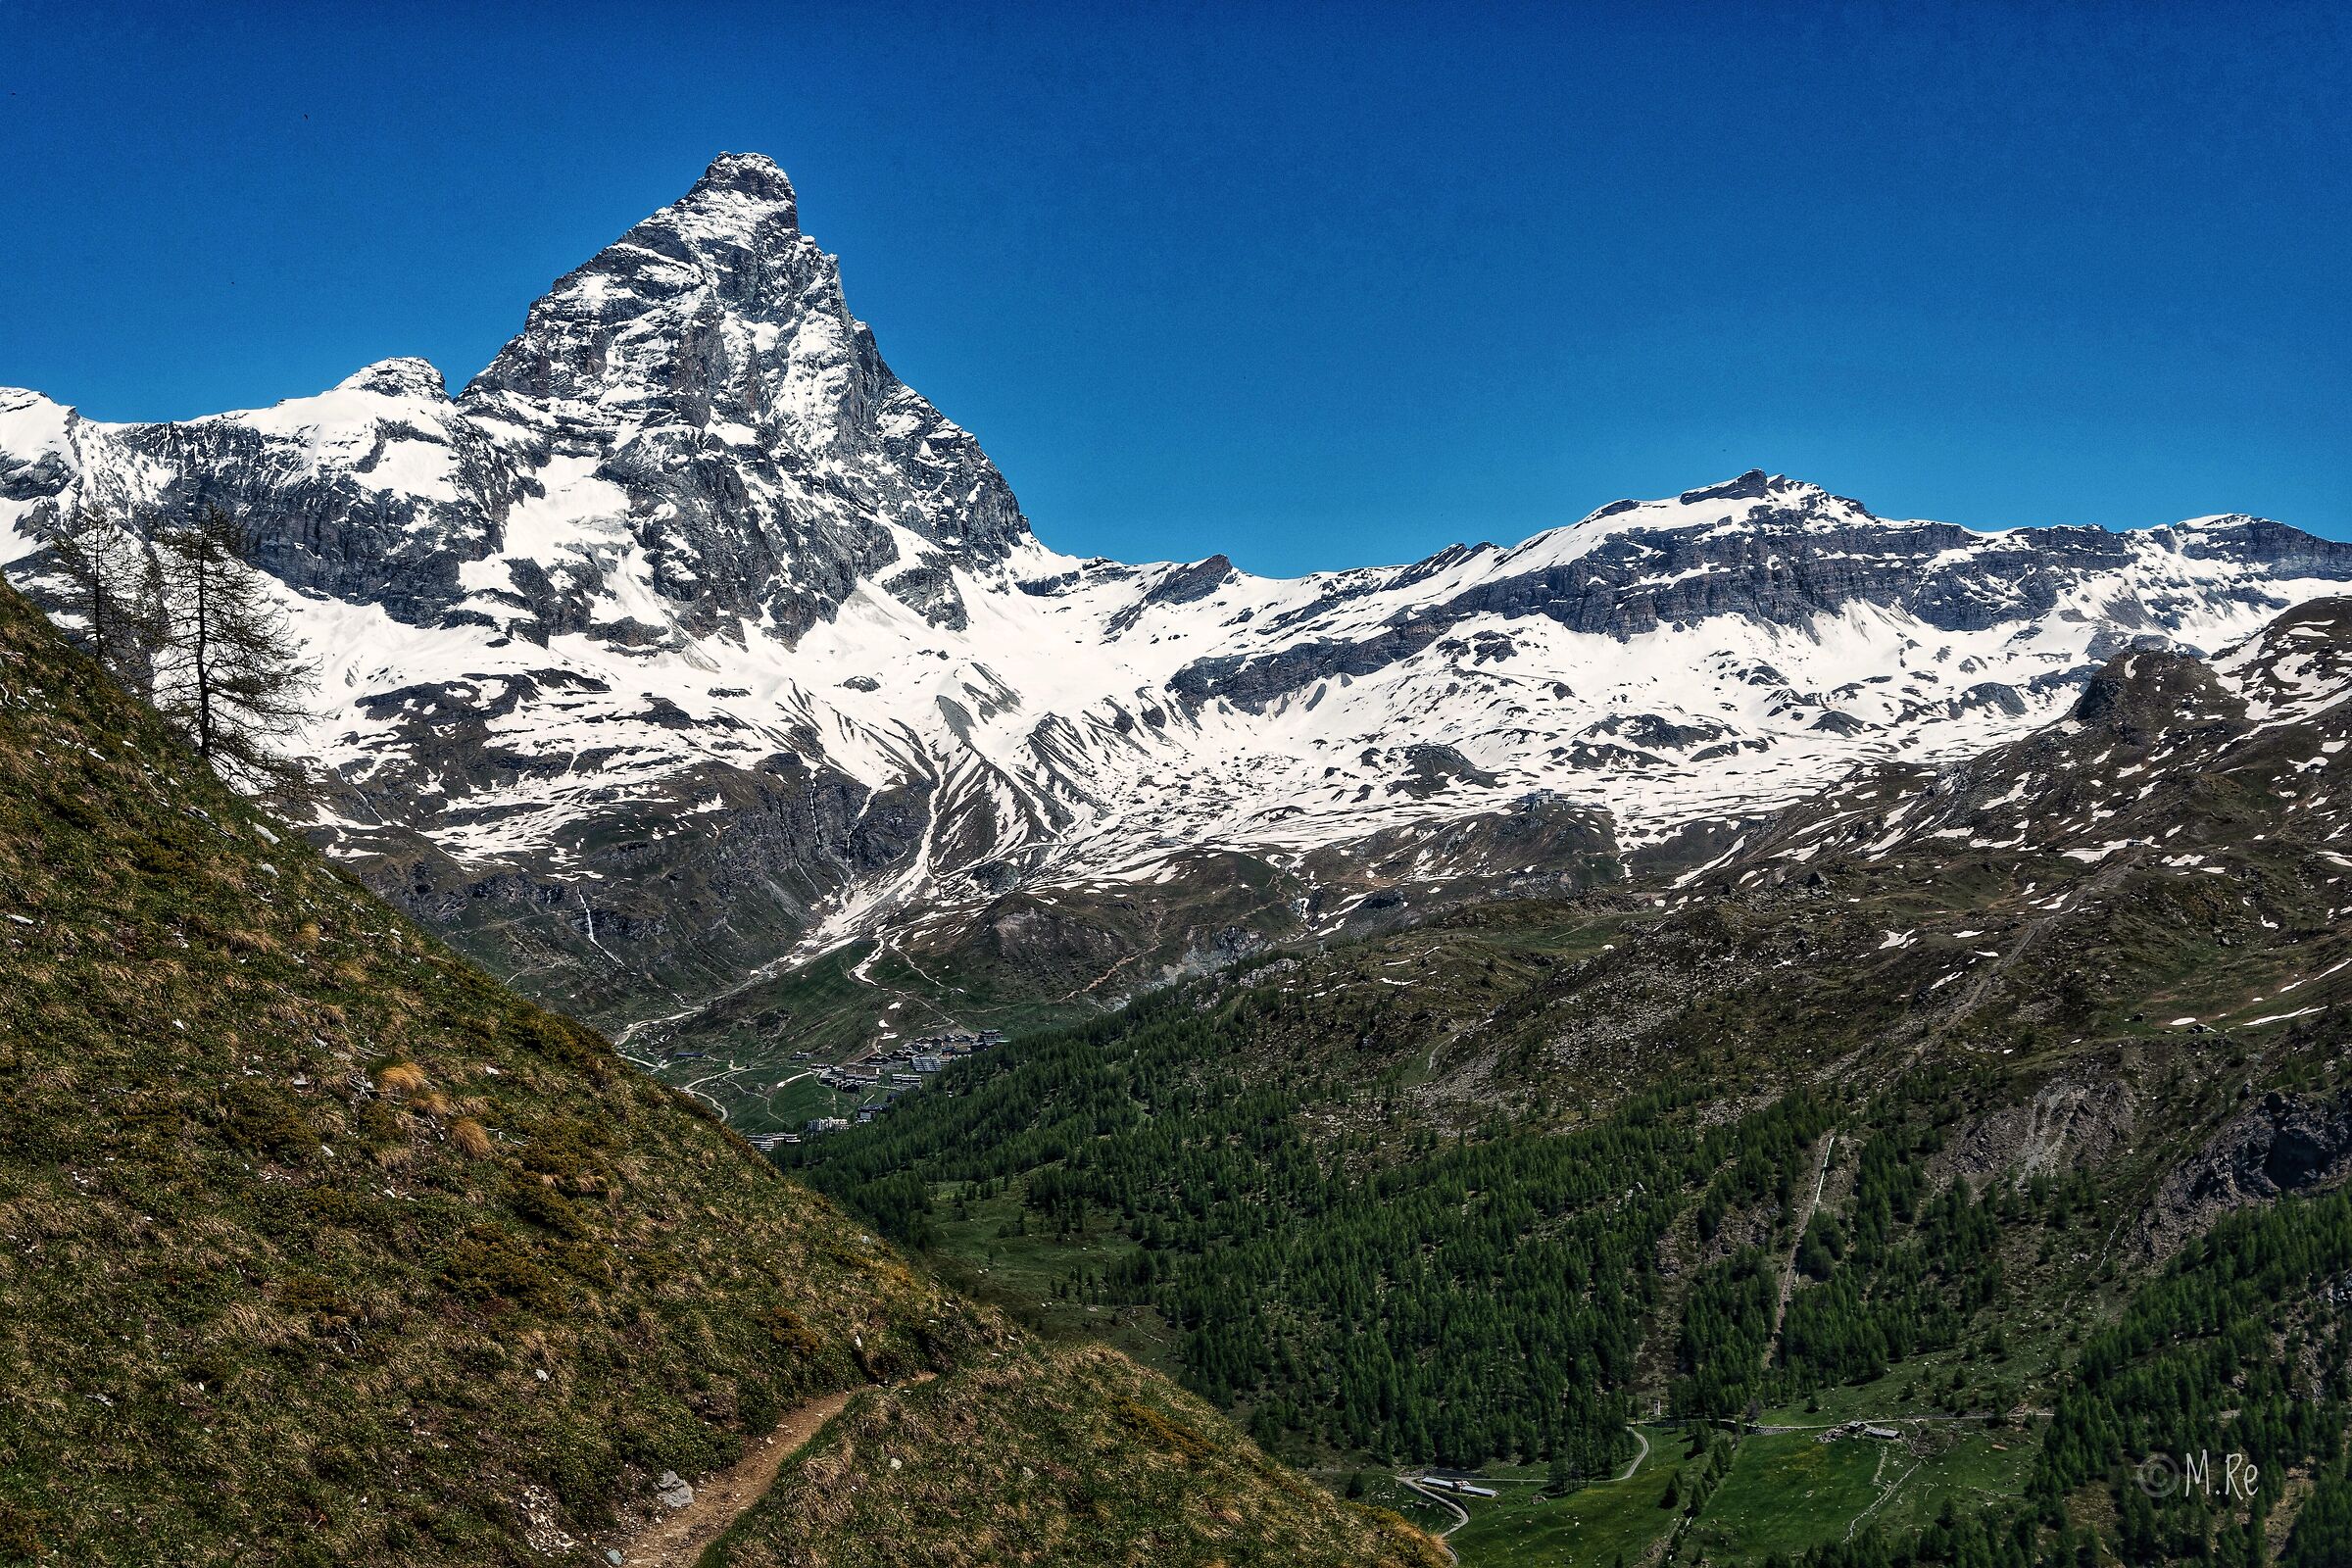 View of the Matterhorn...